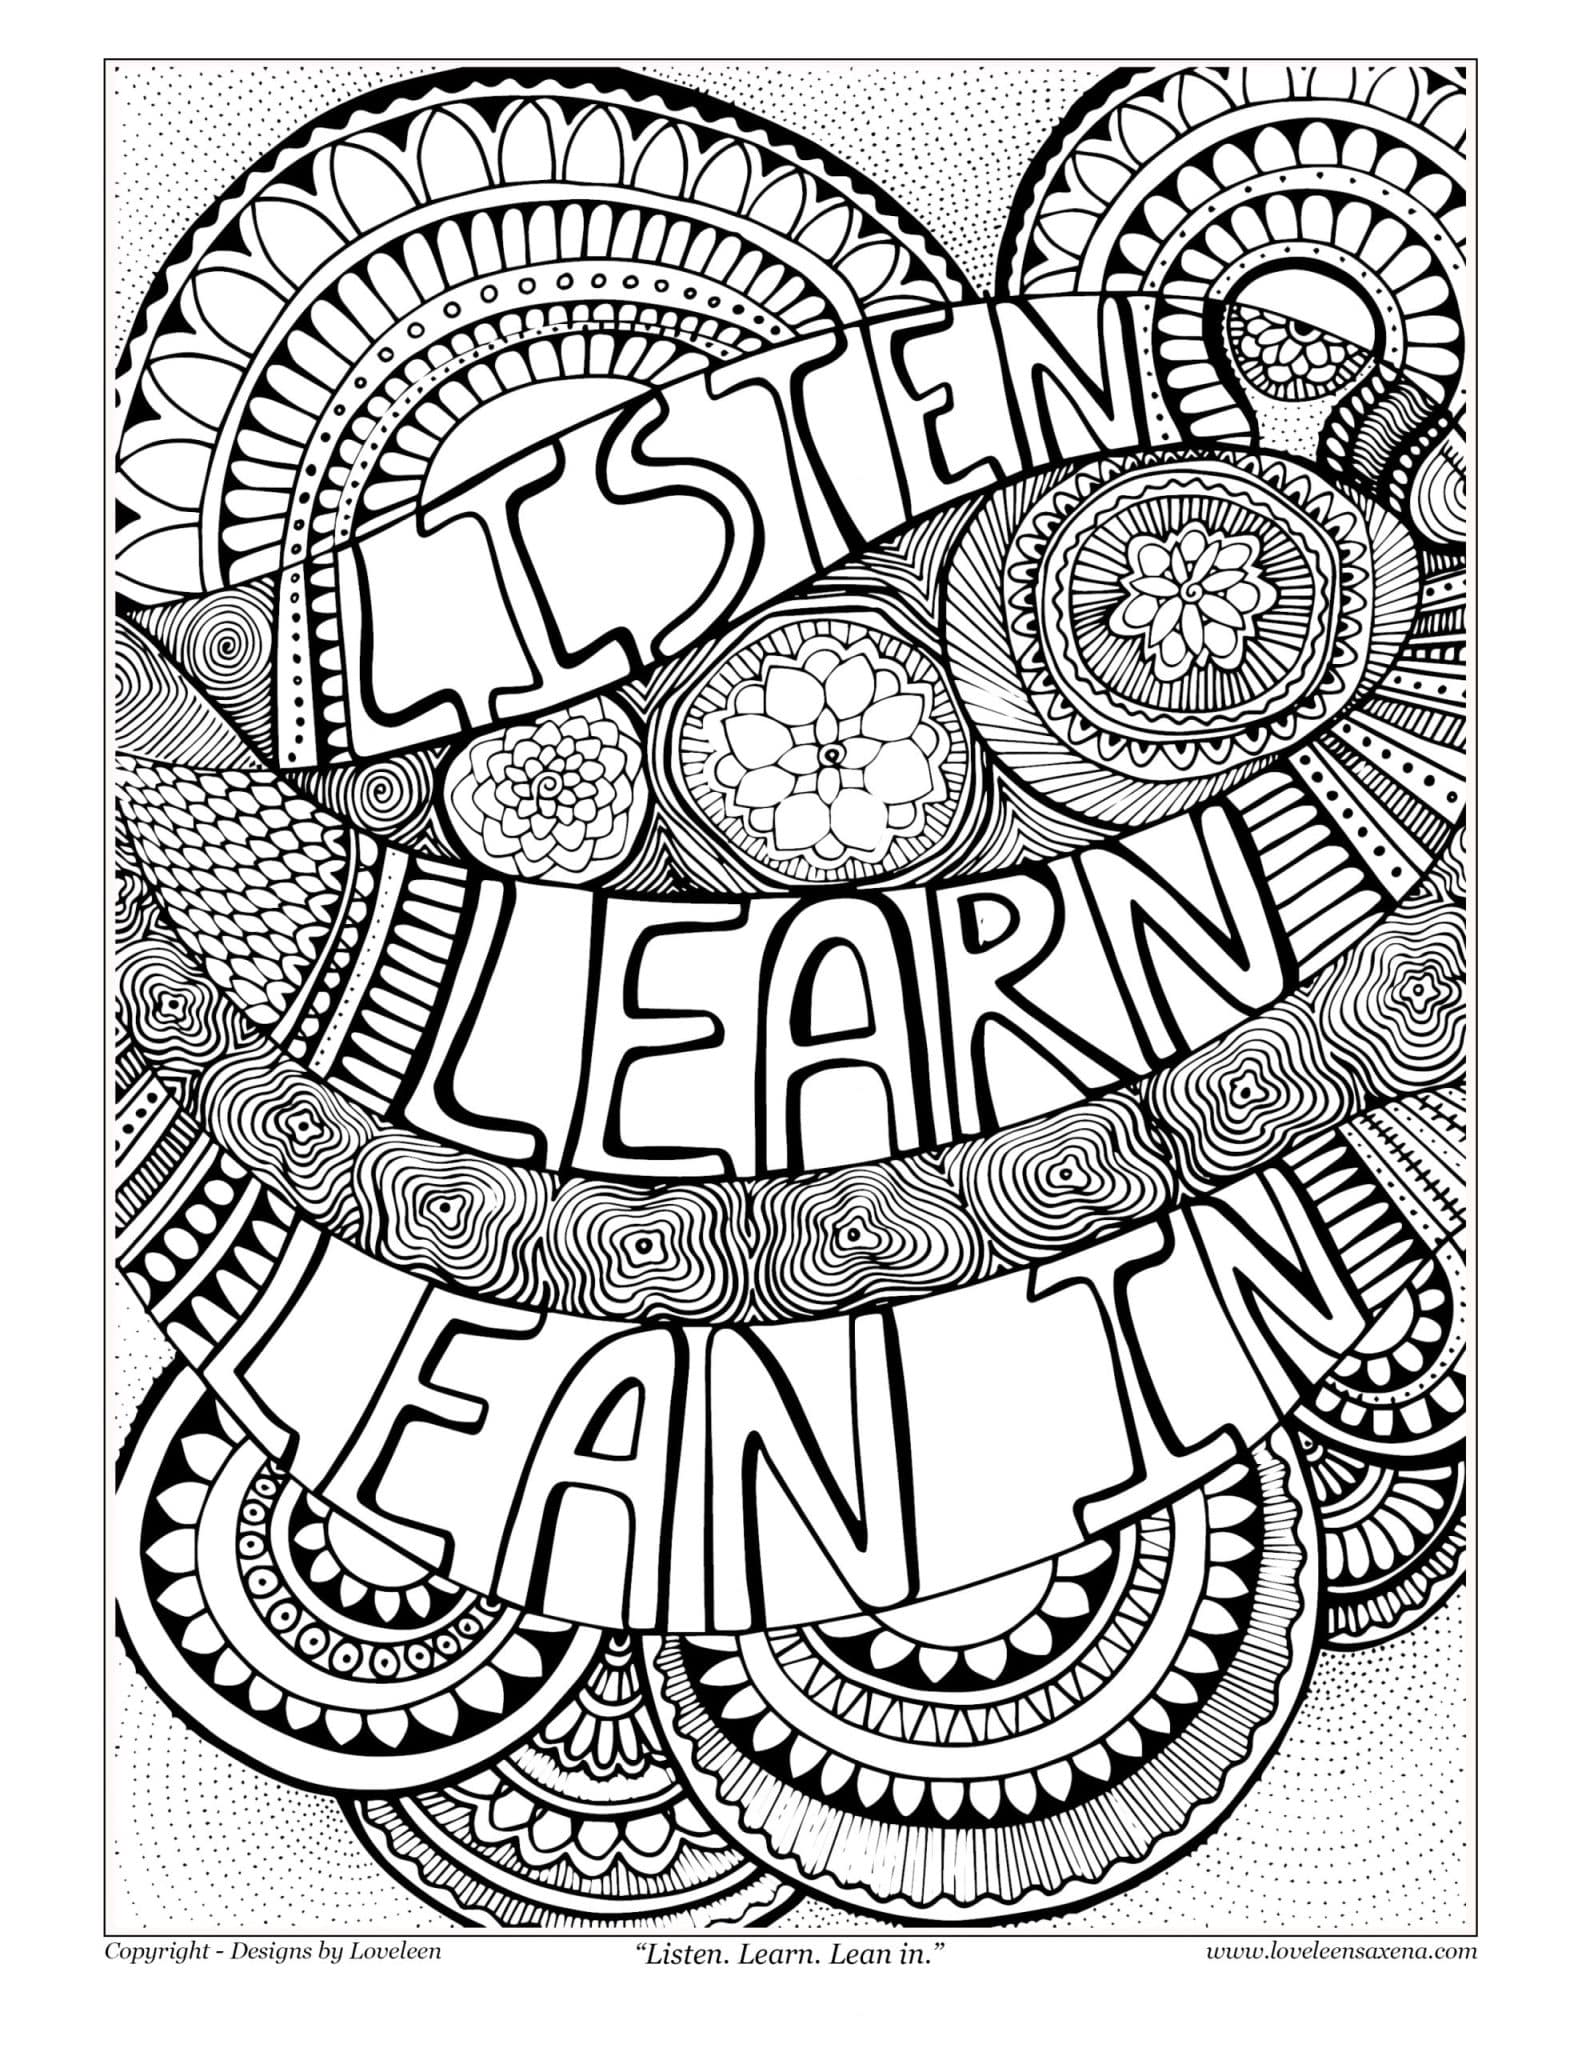 Listen learn lean in coloring artwork